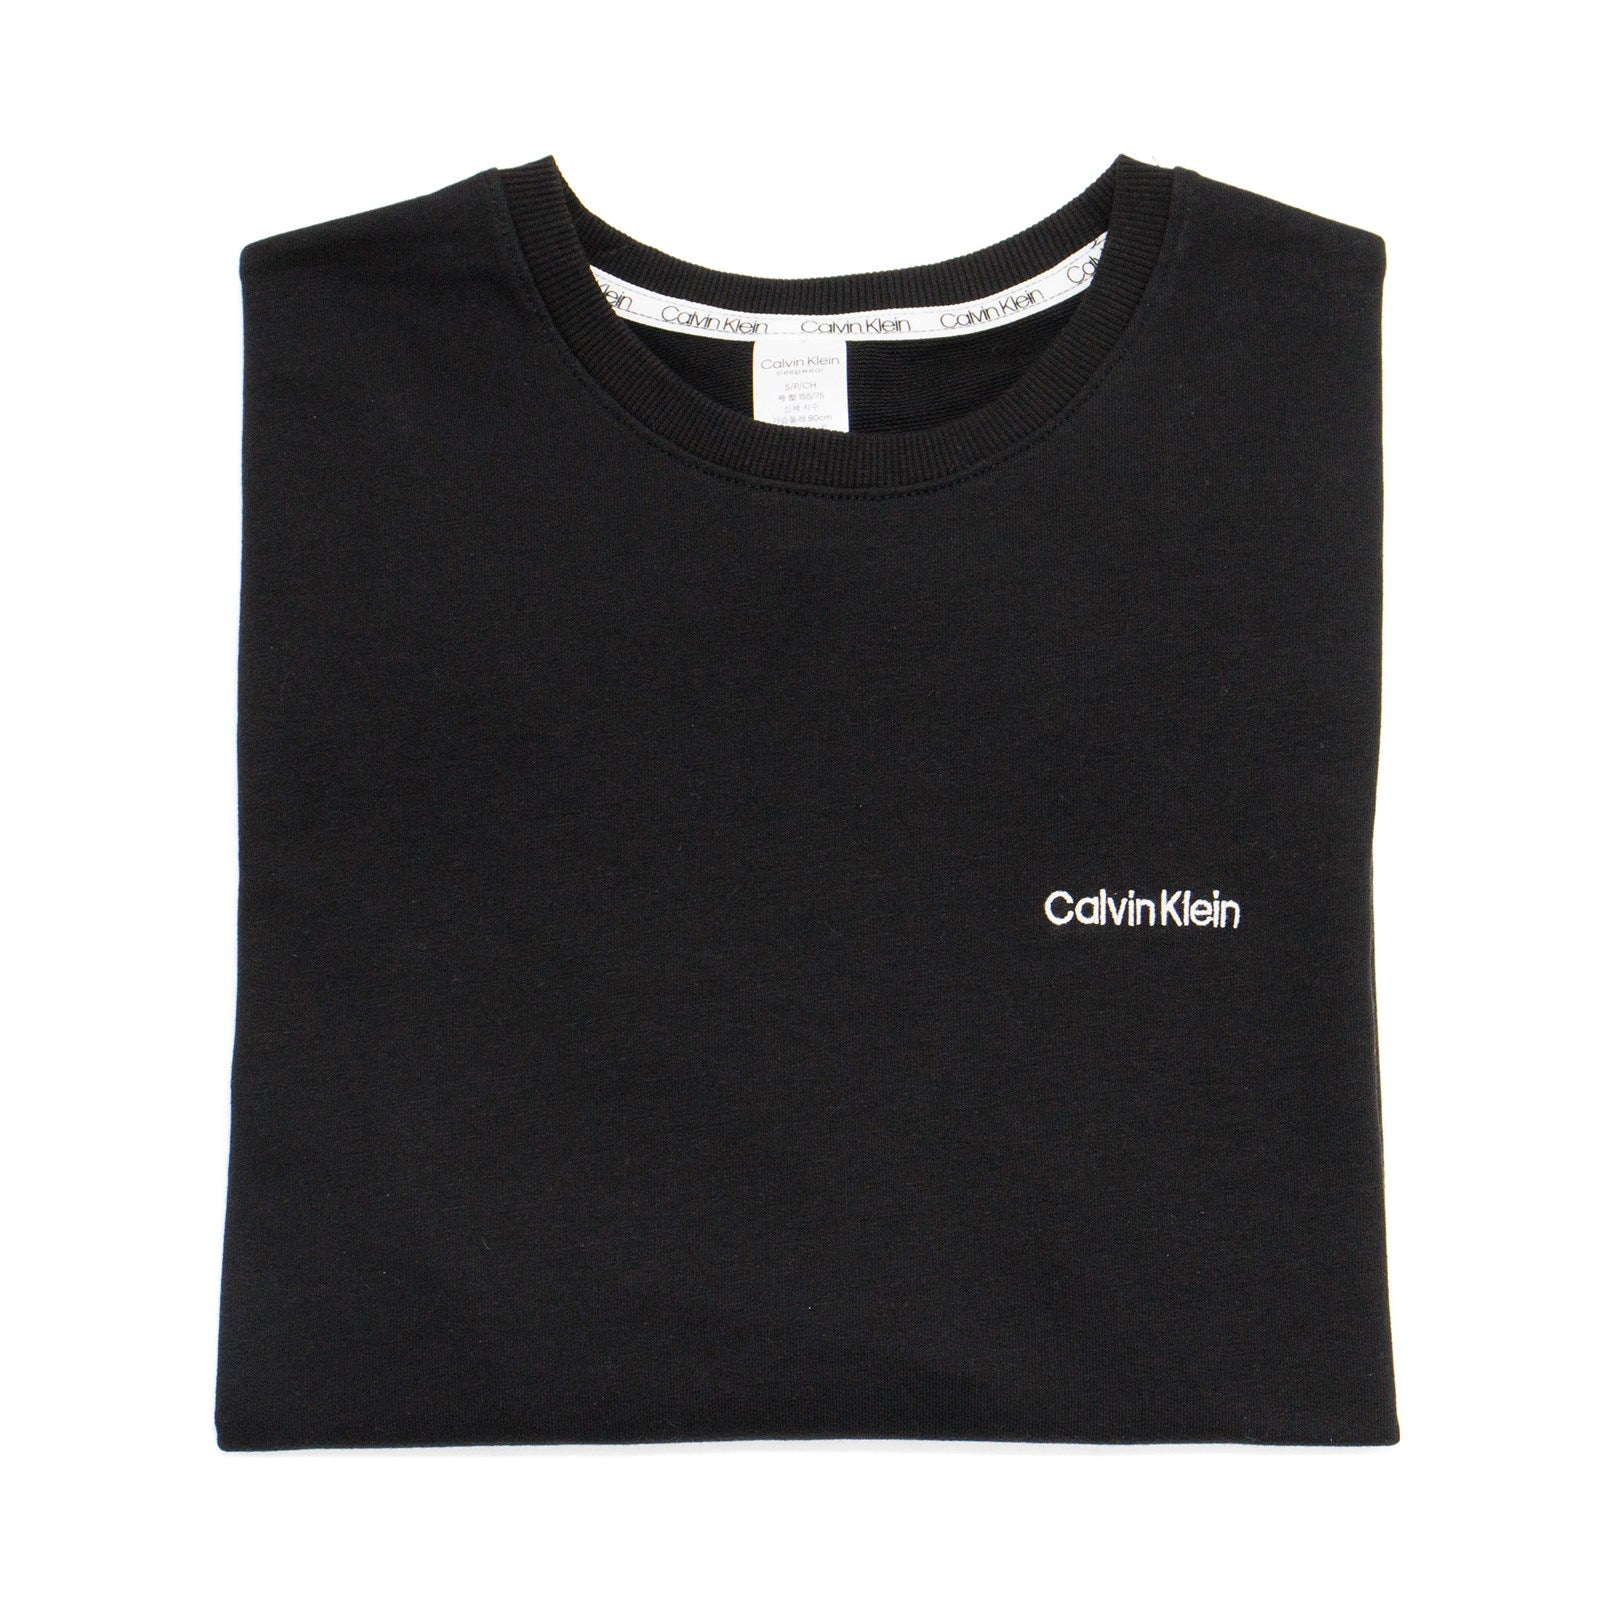 Calvin Klein Women Modern Cotton Lounge Sweatshirt